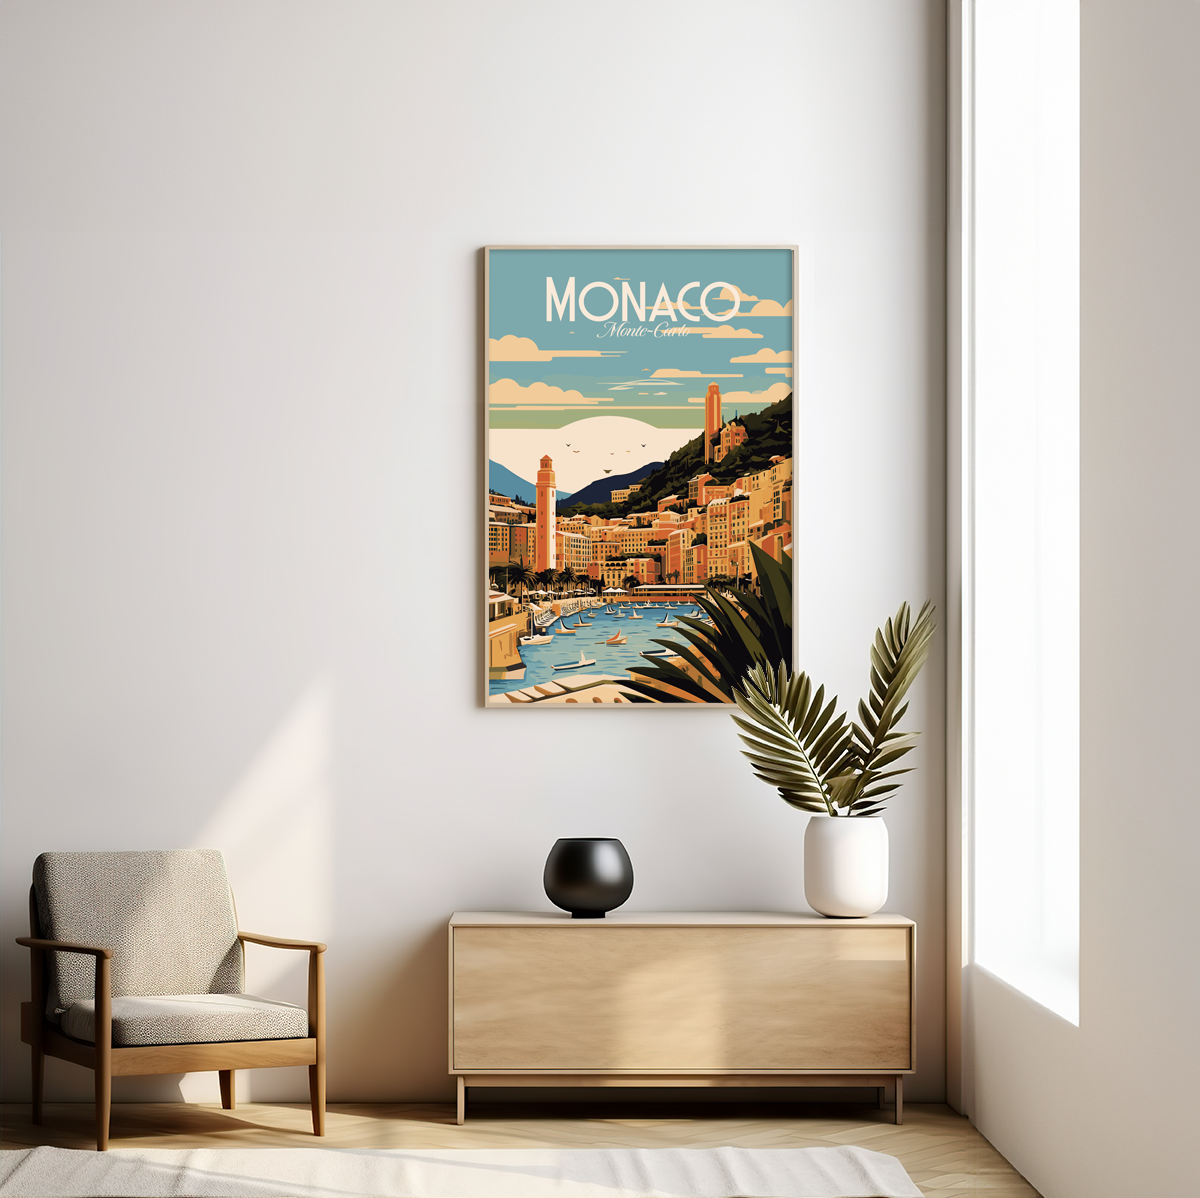 Monaco poster by bon voyage design